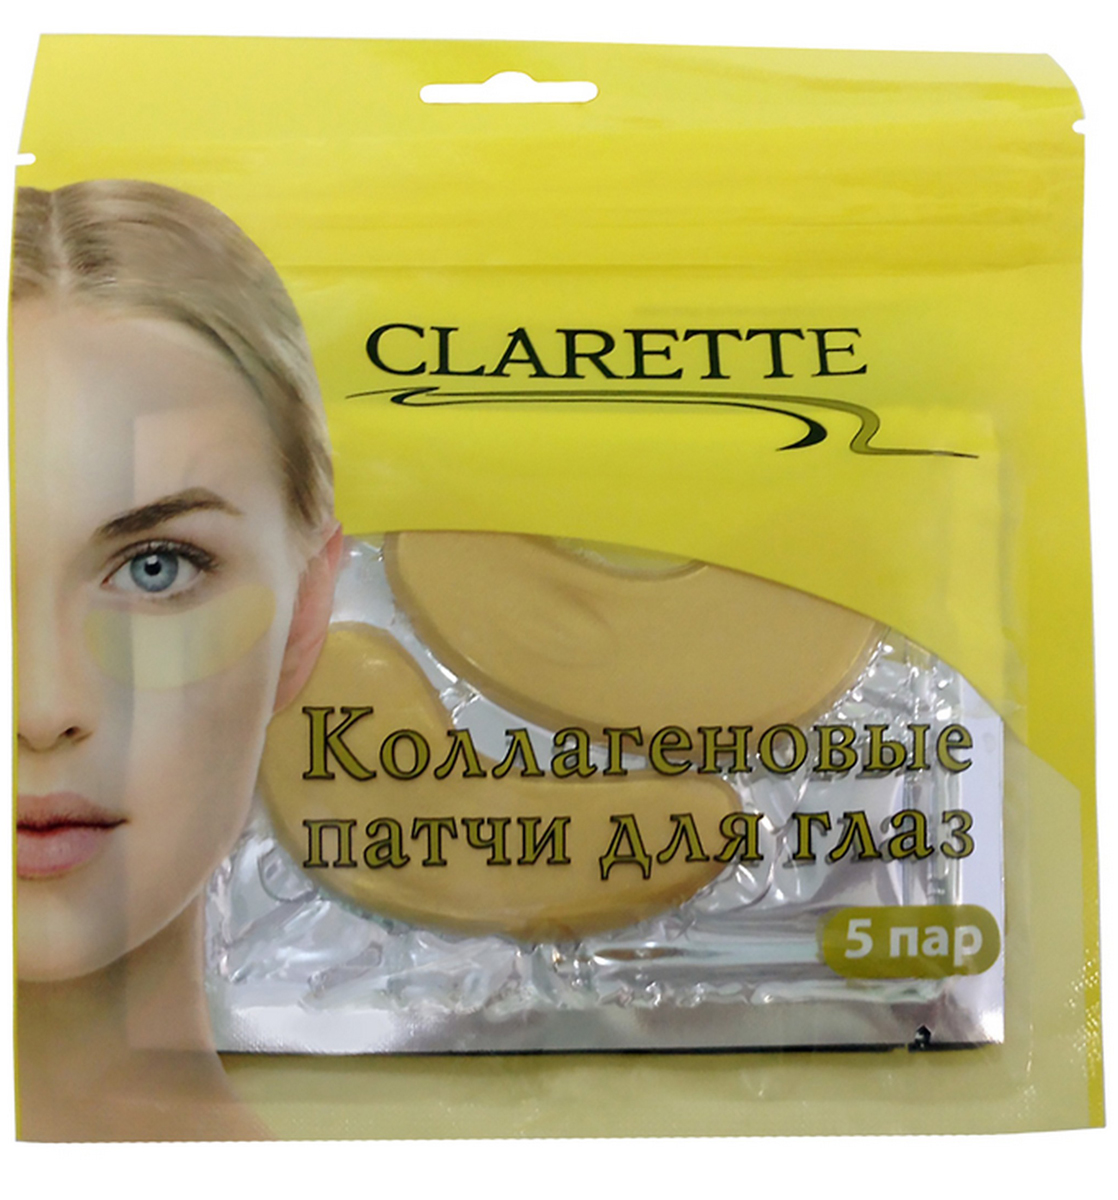 купить Clarette Коллагеновые патчи для глаз - заказ и доставка в Москве и Санкт-Петербурге